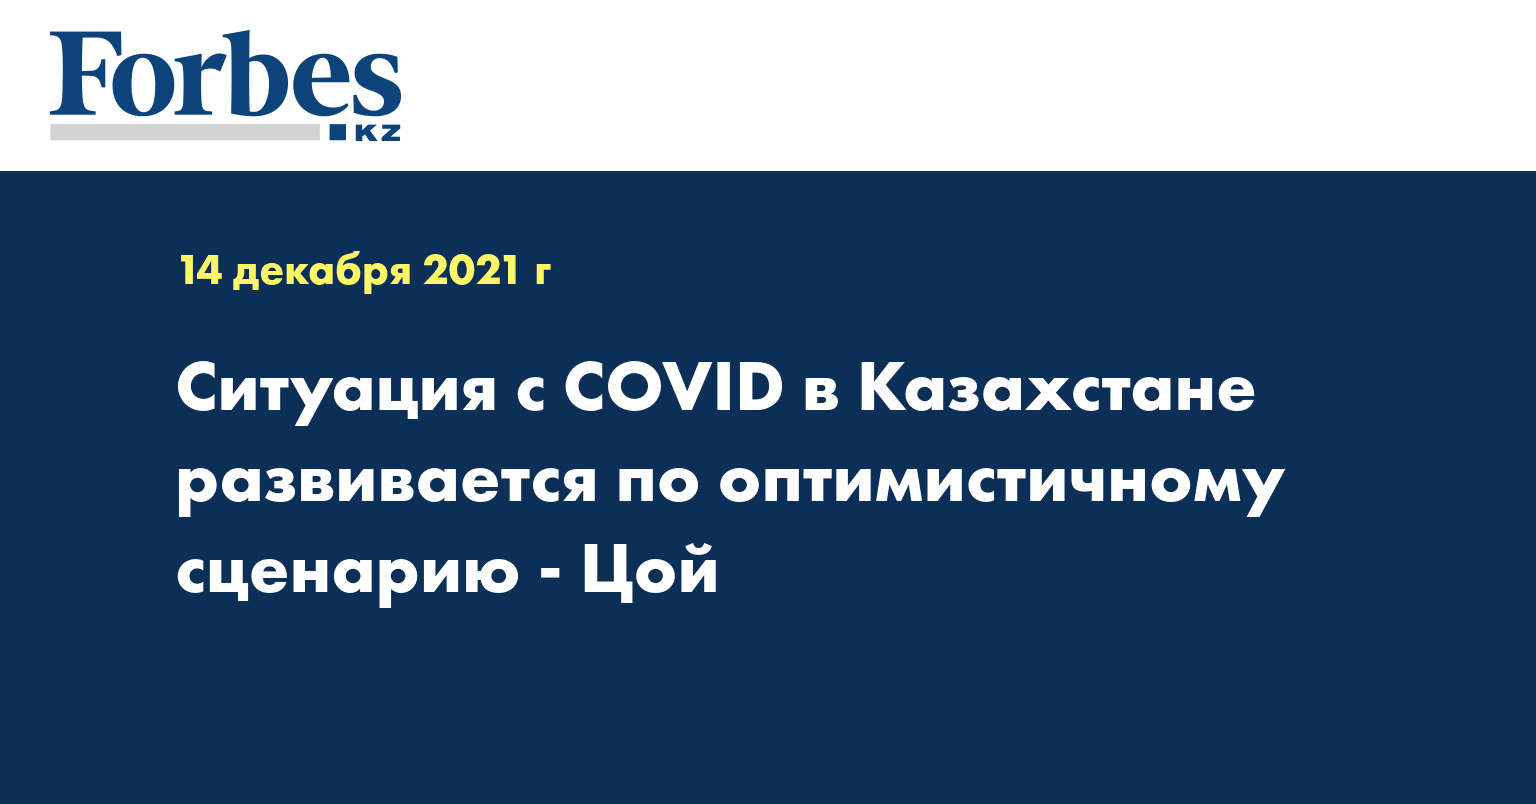 Ситуация с COVID в Казахстане развивается по оптимистичному сценарию - Цой 